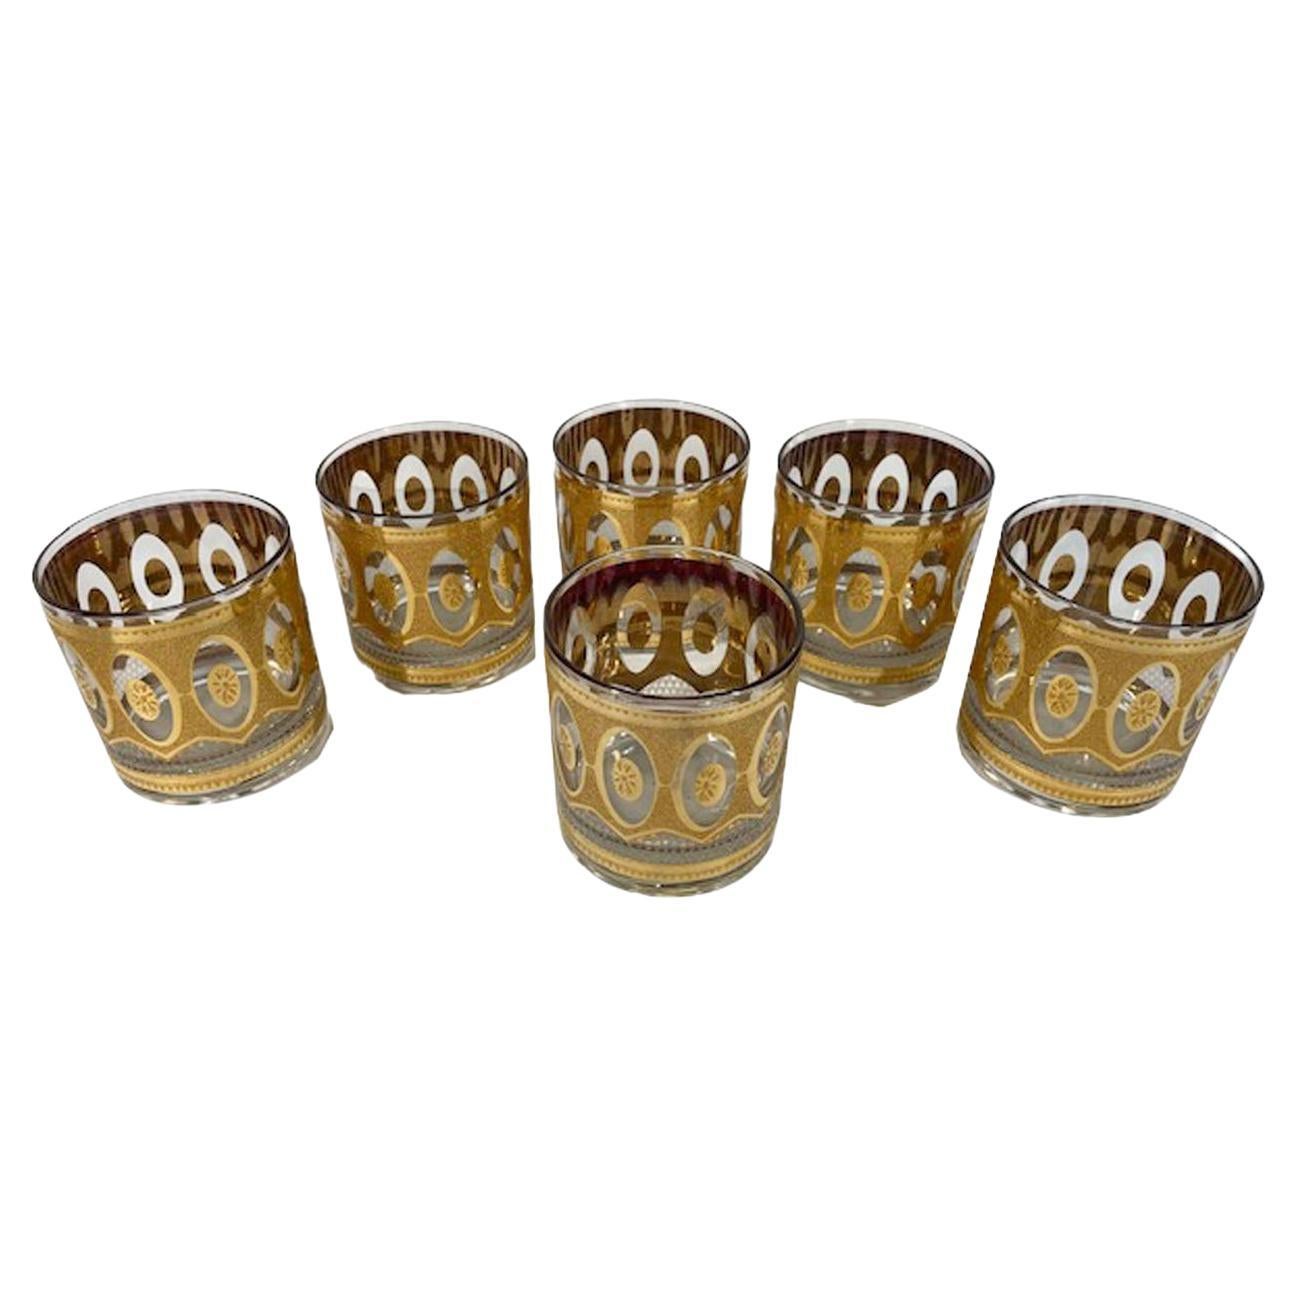 Ensemble de 6 verres à roche de style Mid-Century Modern de Culver dans le motif Recency